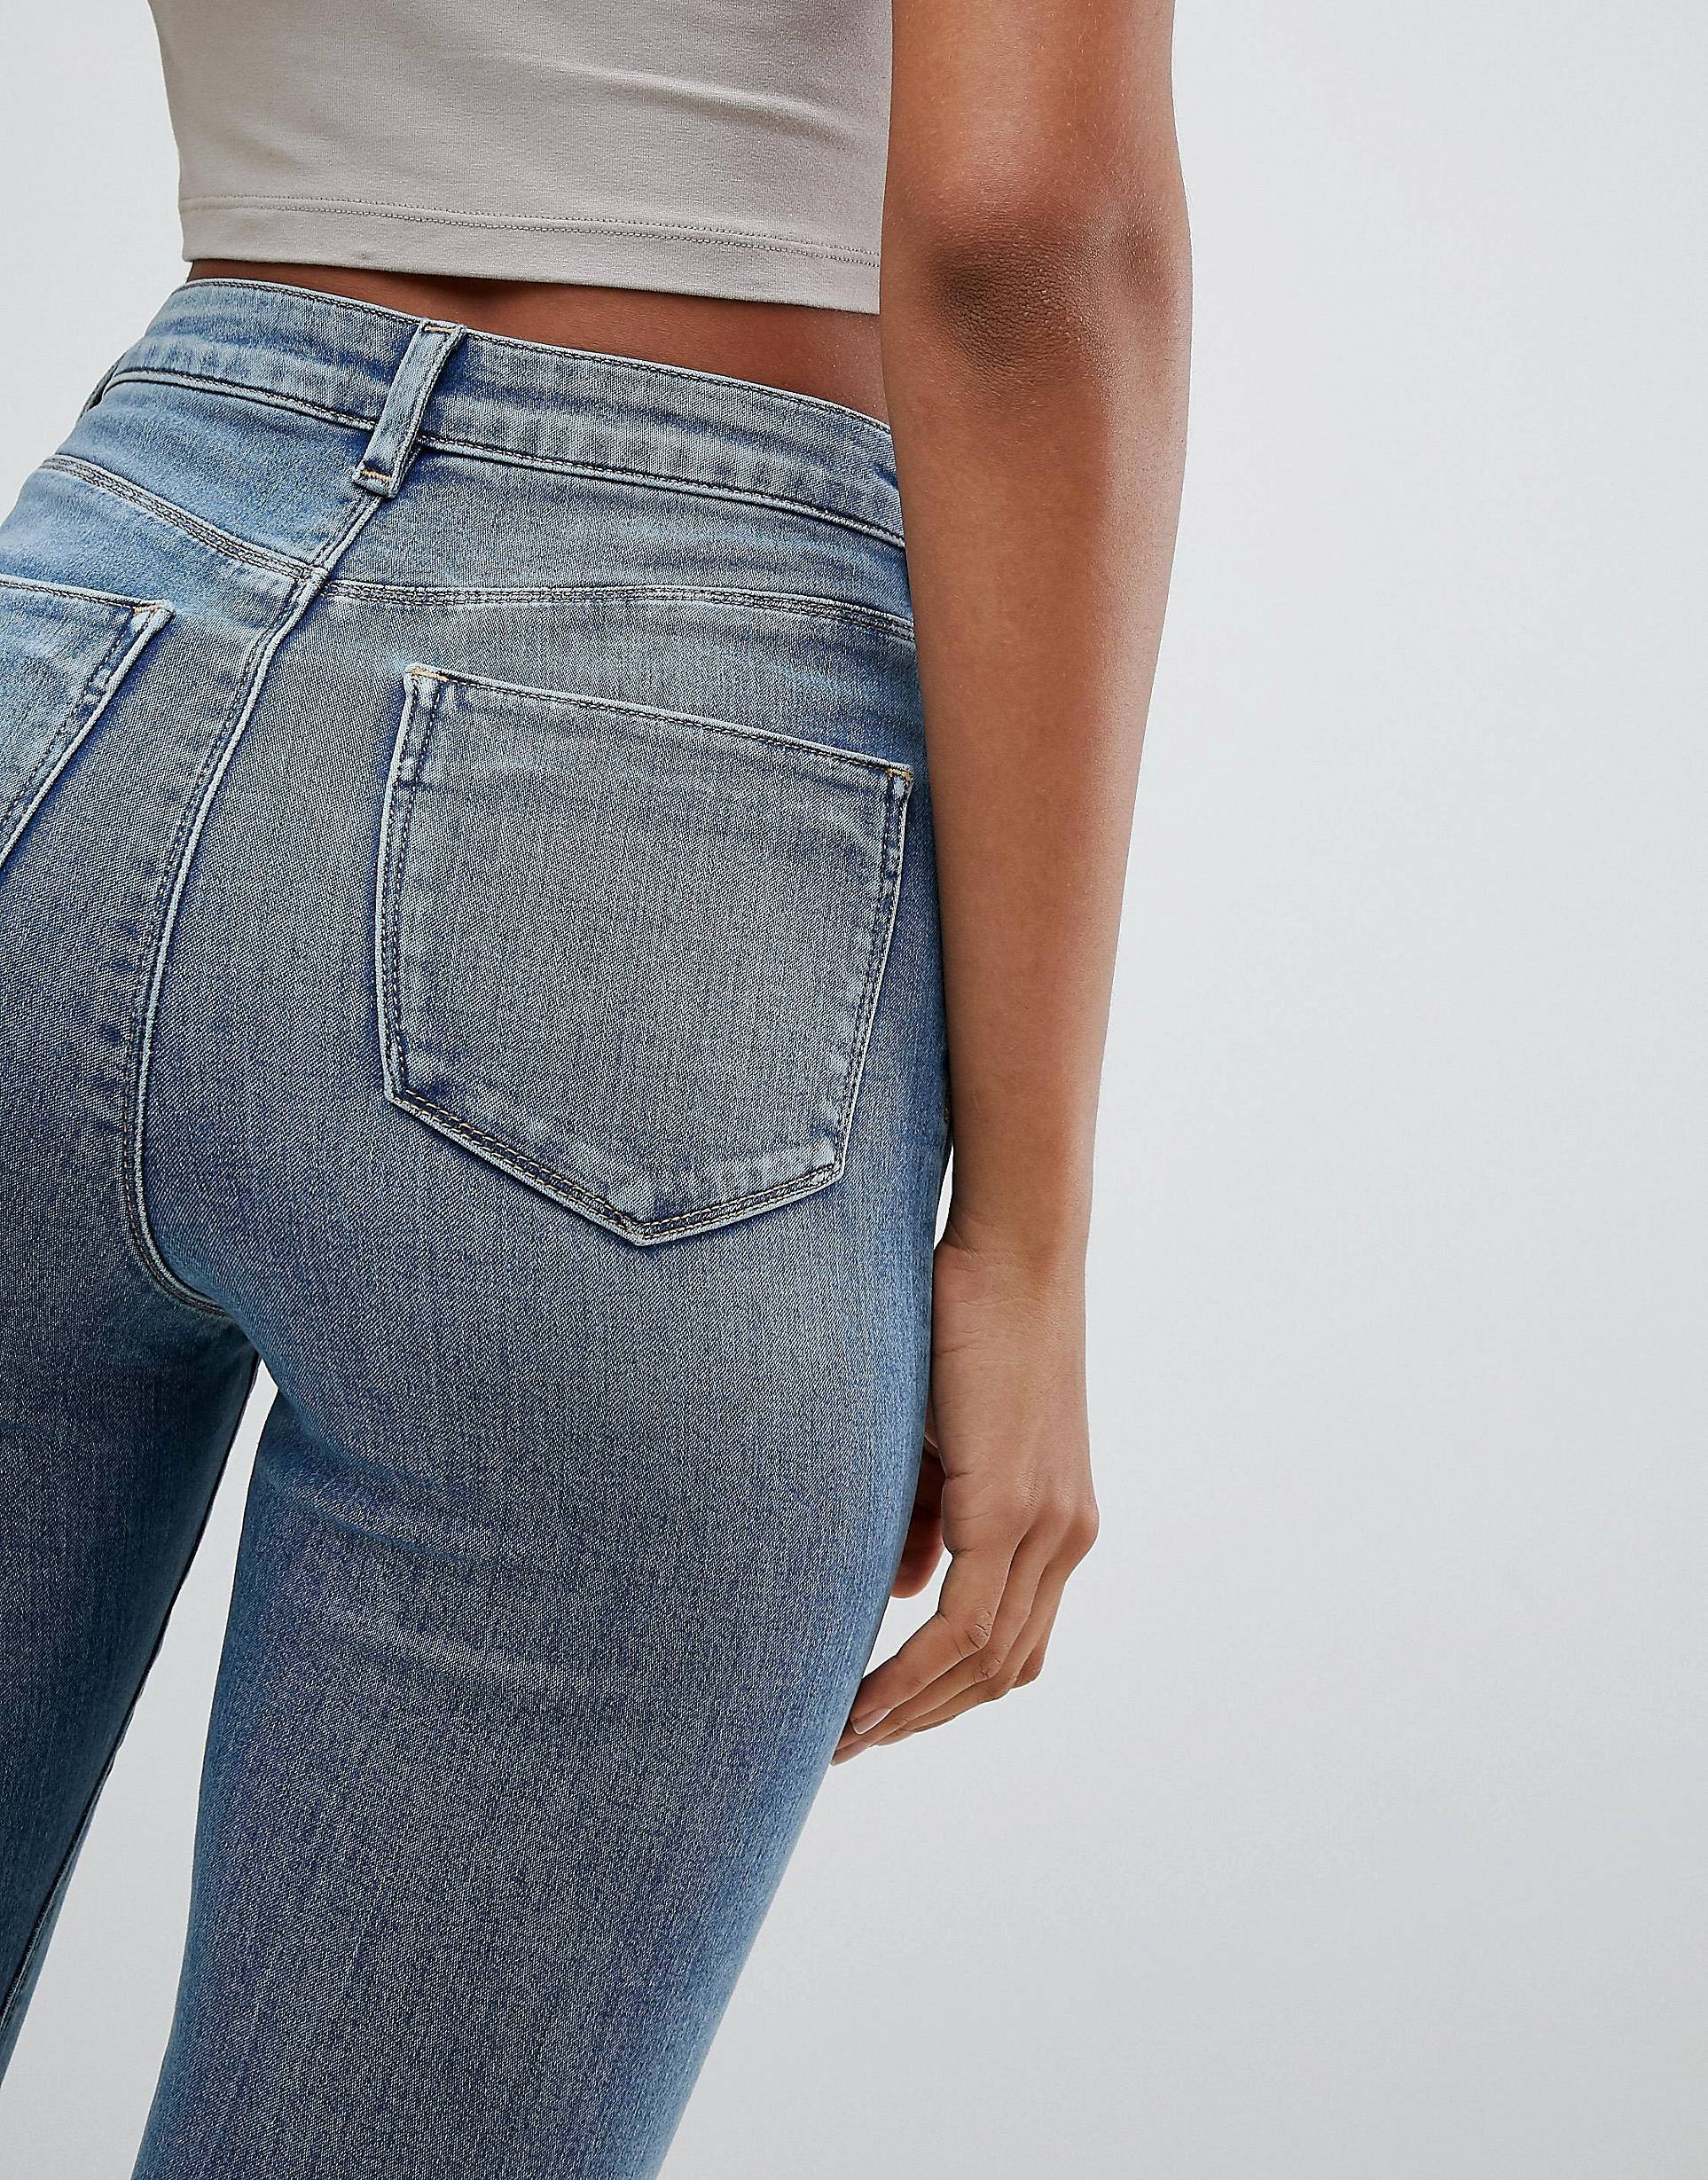 Как подобрать джинсы по фигуре женщине, девушке